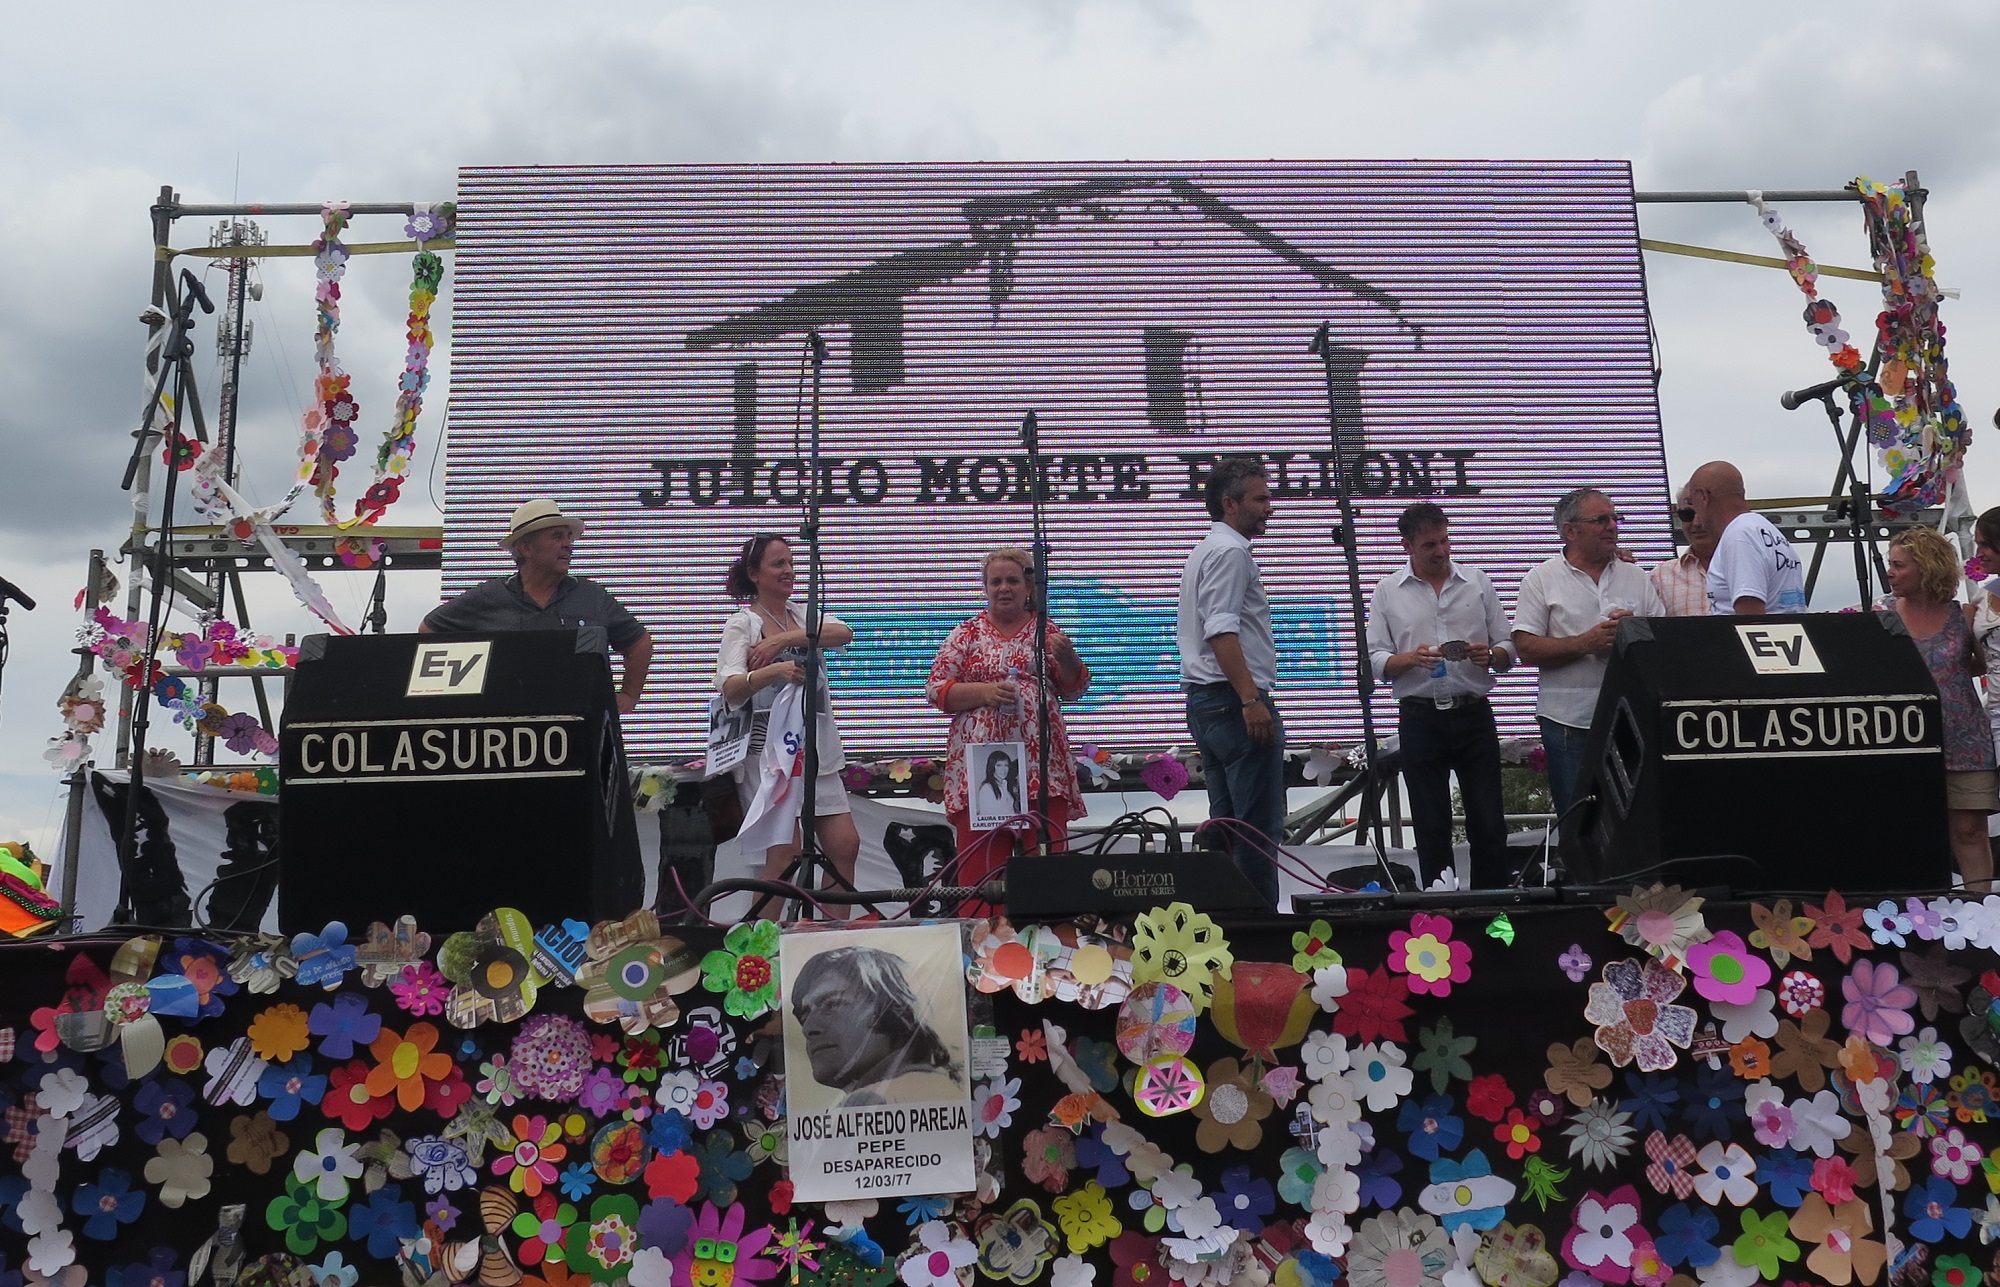 Las 35 mil flores realizadas por niños adornaron también el escenario de los festejos. - Fotos: Belén Cano/Ministerio Público Fiscal/www.fiscales.gob.ar